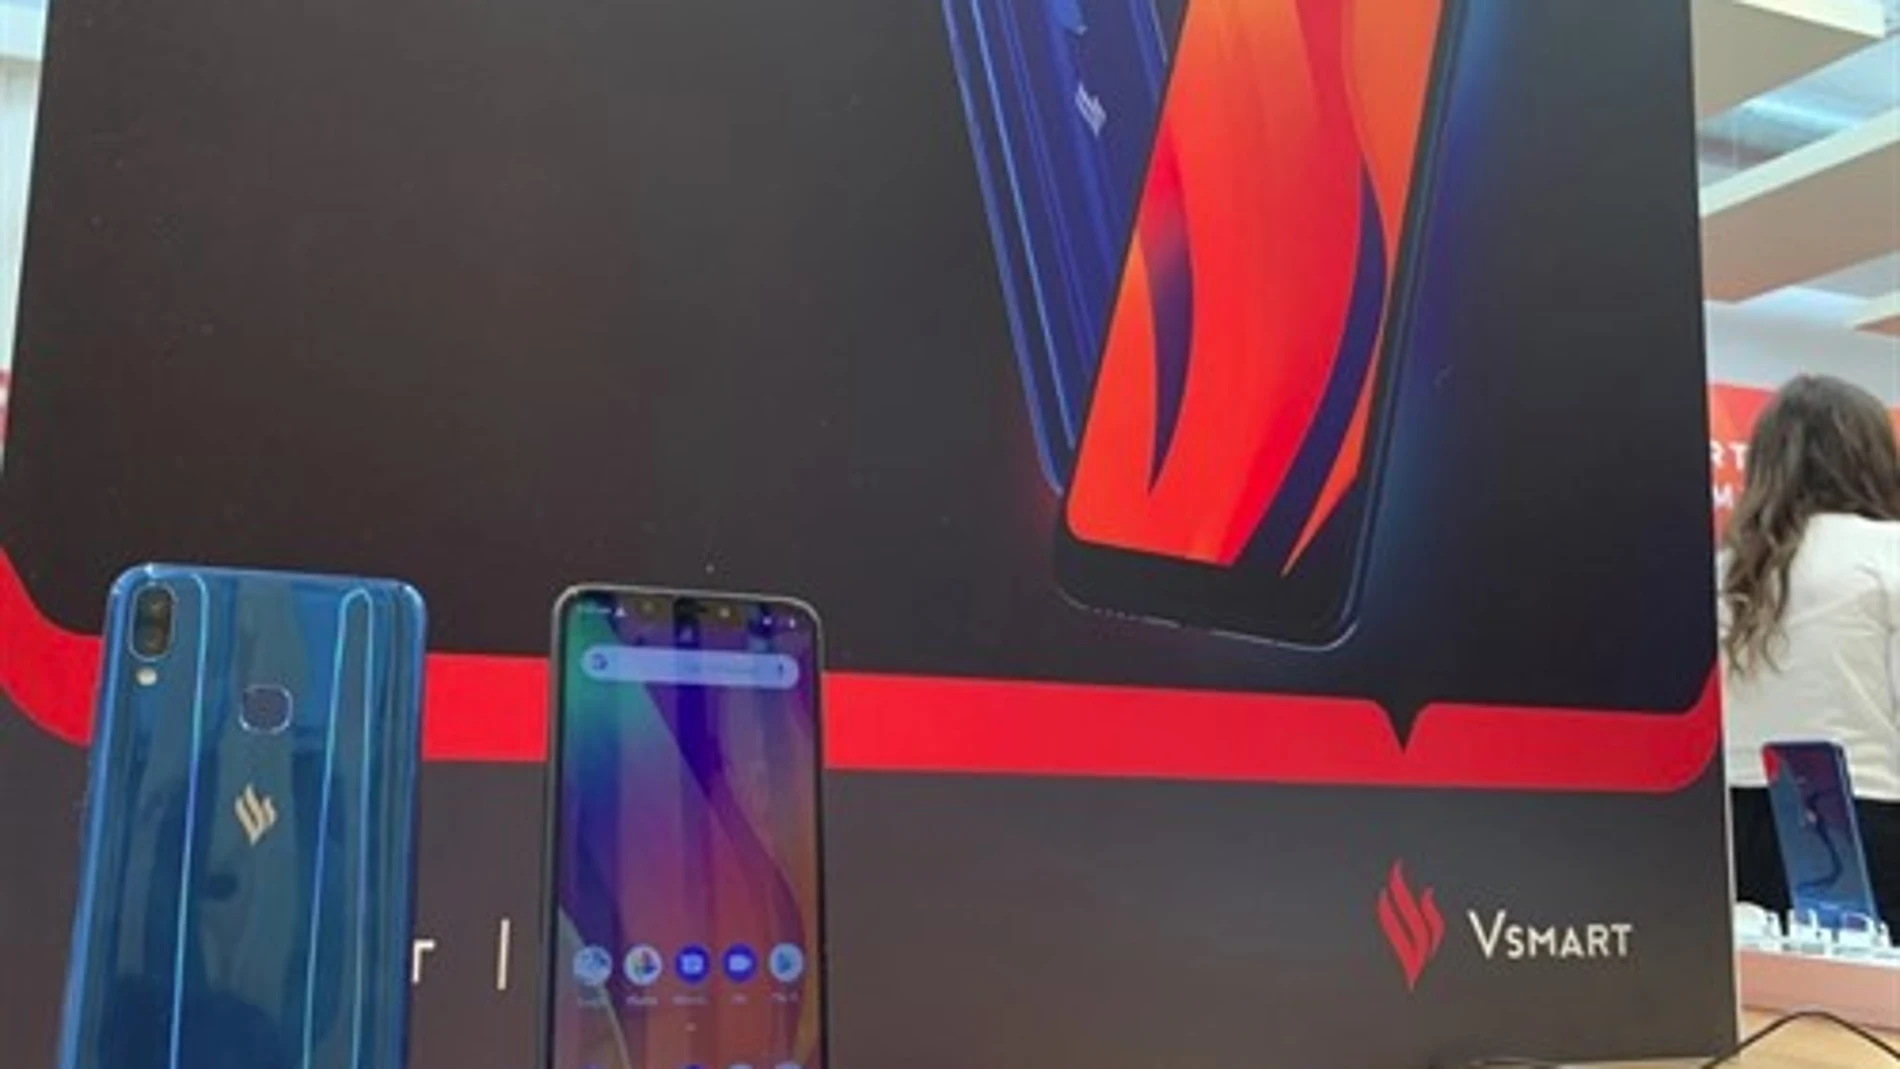 Dos de los nuevos modelos de móvil de Vsmart / Portaltic